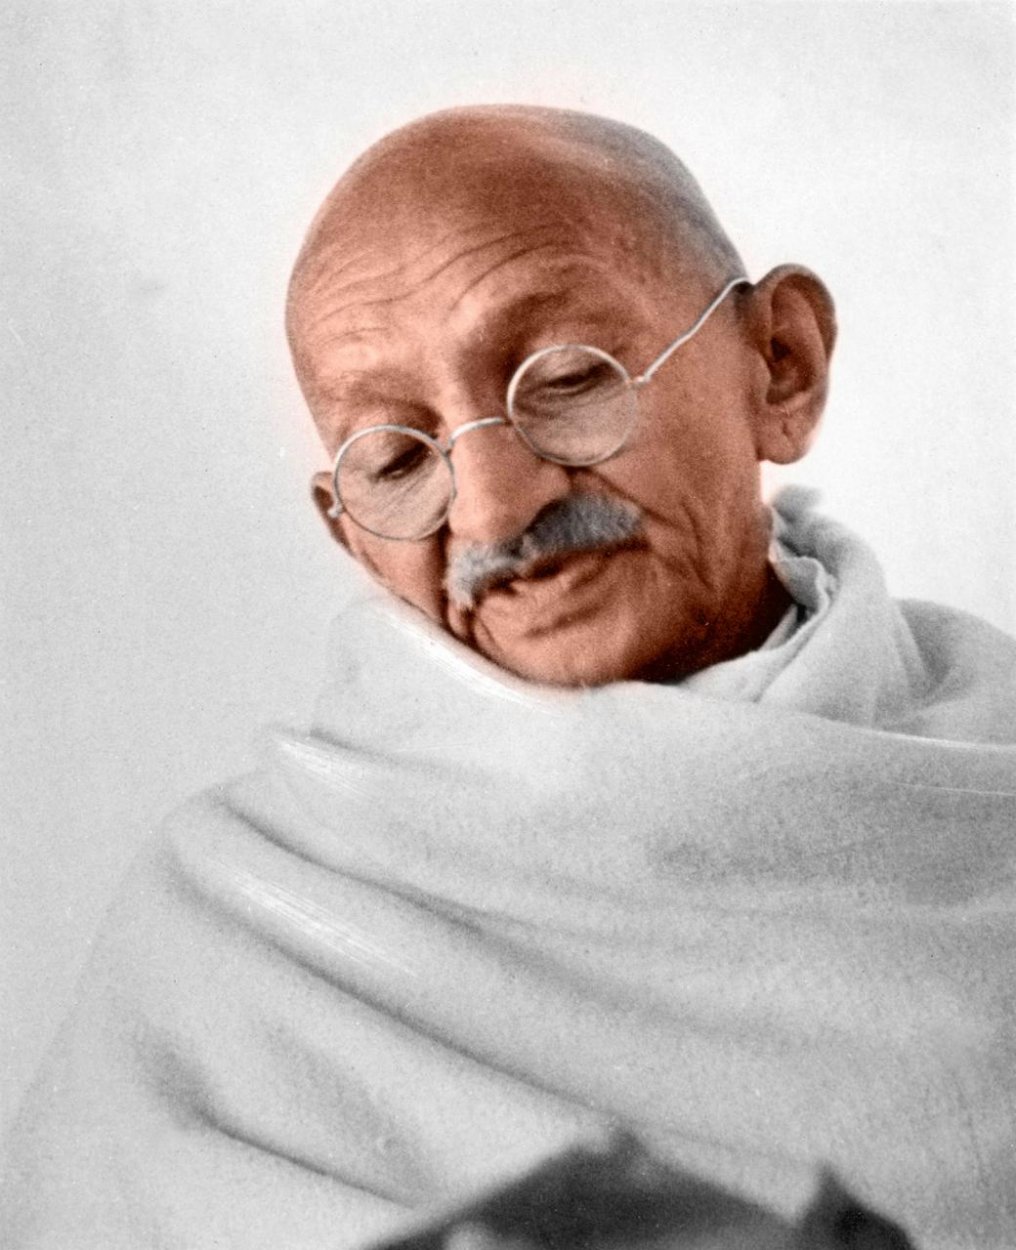 Veľká duša Gándhího